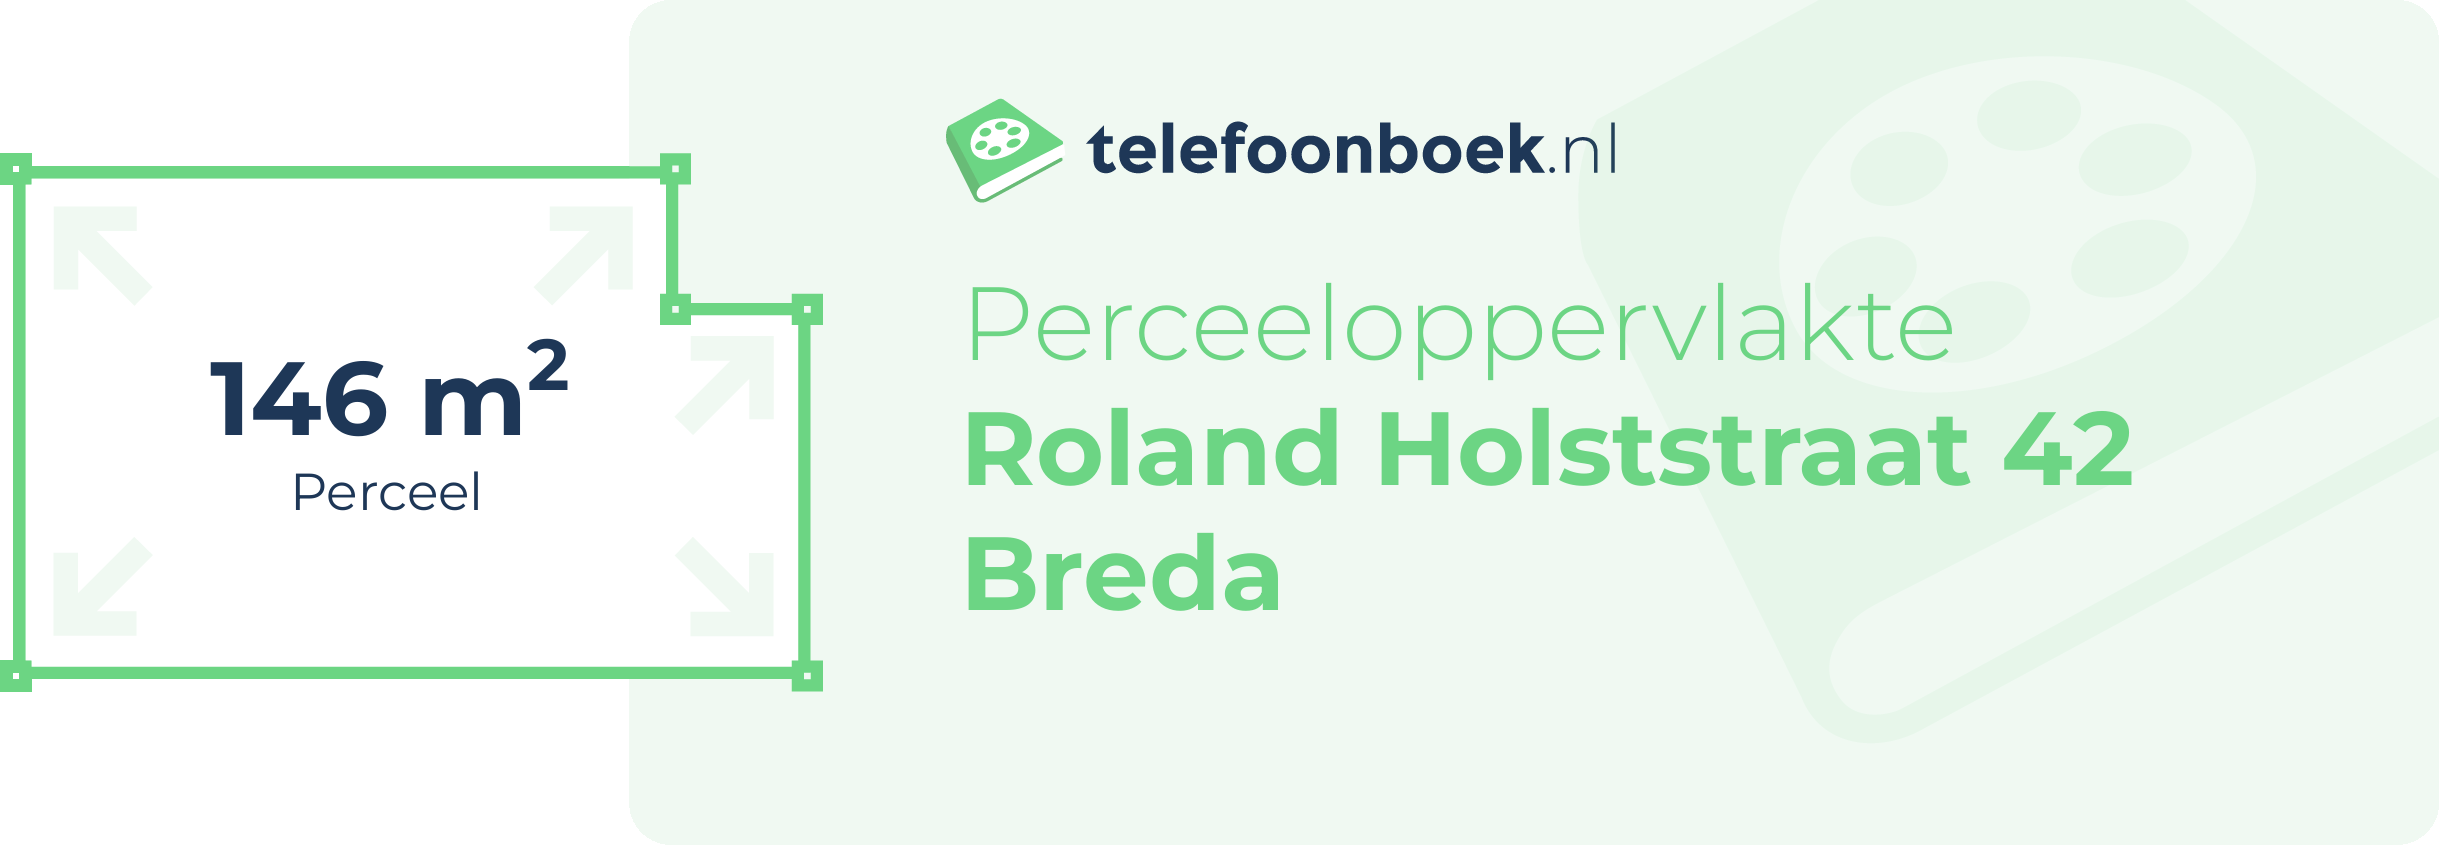 Perceeloppervlakte Roland Holststraat 42 Breda